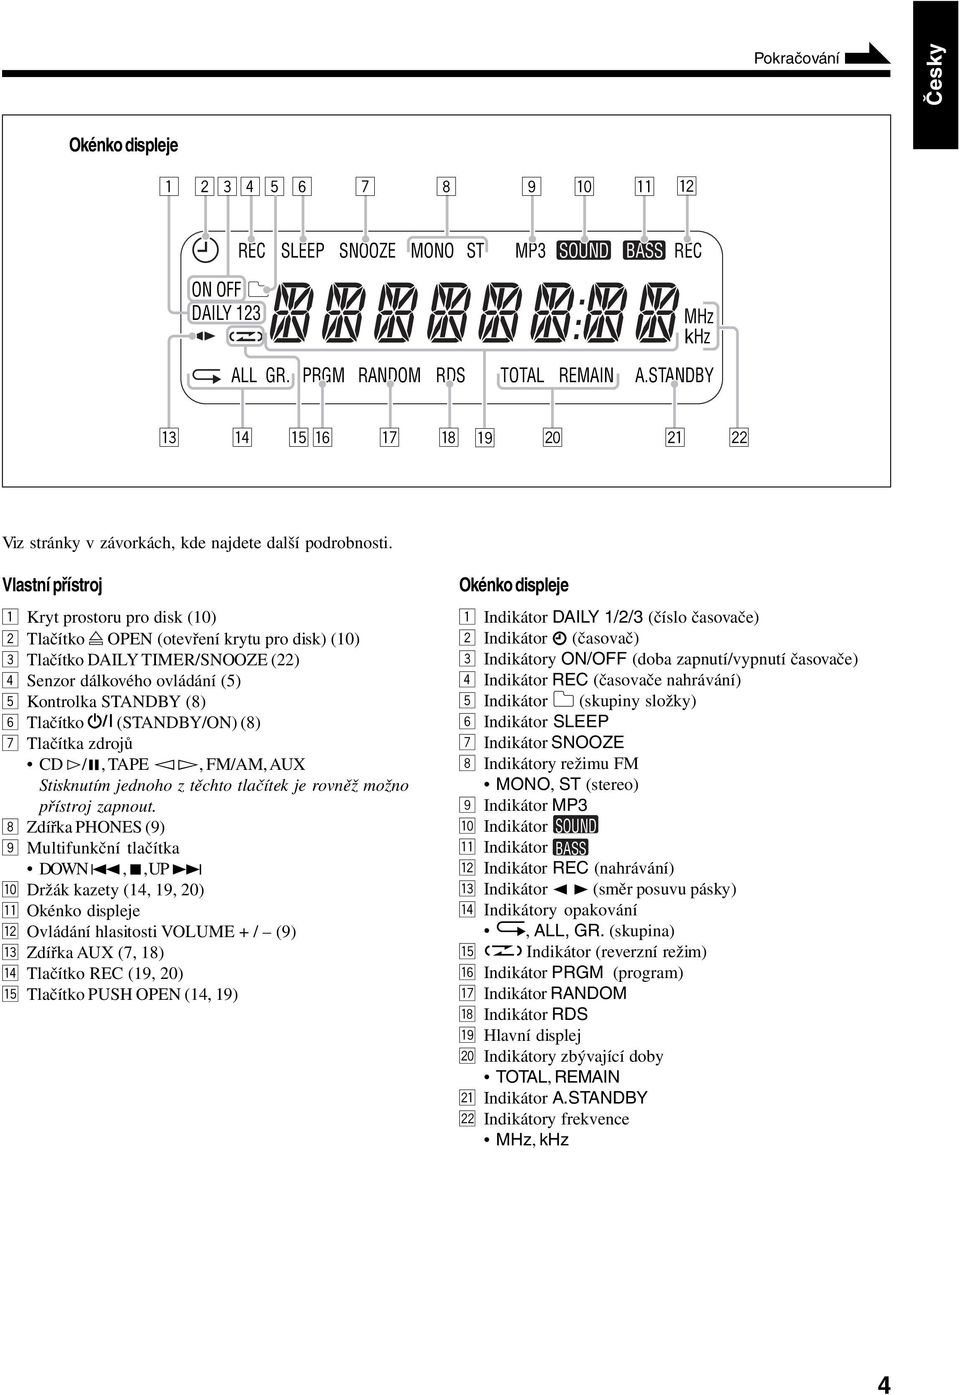 Vlastní přístroj 1 Kryt prostoru pro disk (10) 2 Tlačítko OPEN (otevření krytu pro disk) (10) 3 Tlačítko DAILY TIMER/SNOOZE (22) 4 Senzor dálkového ovládání (5) 5 Kontrolka STANDBY (8) 6 Tlačítko